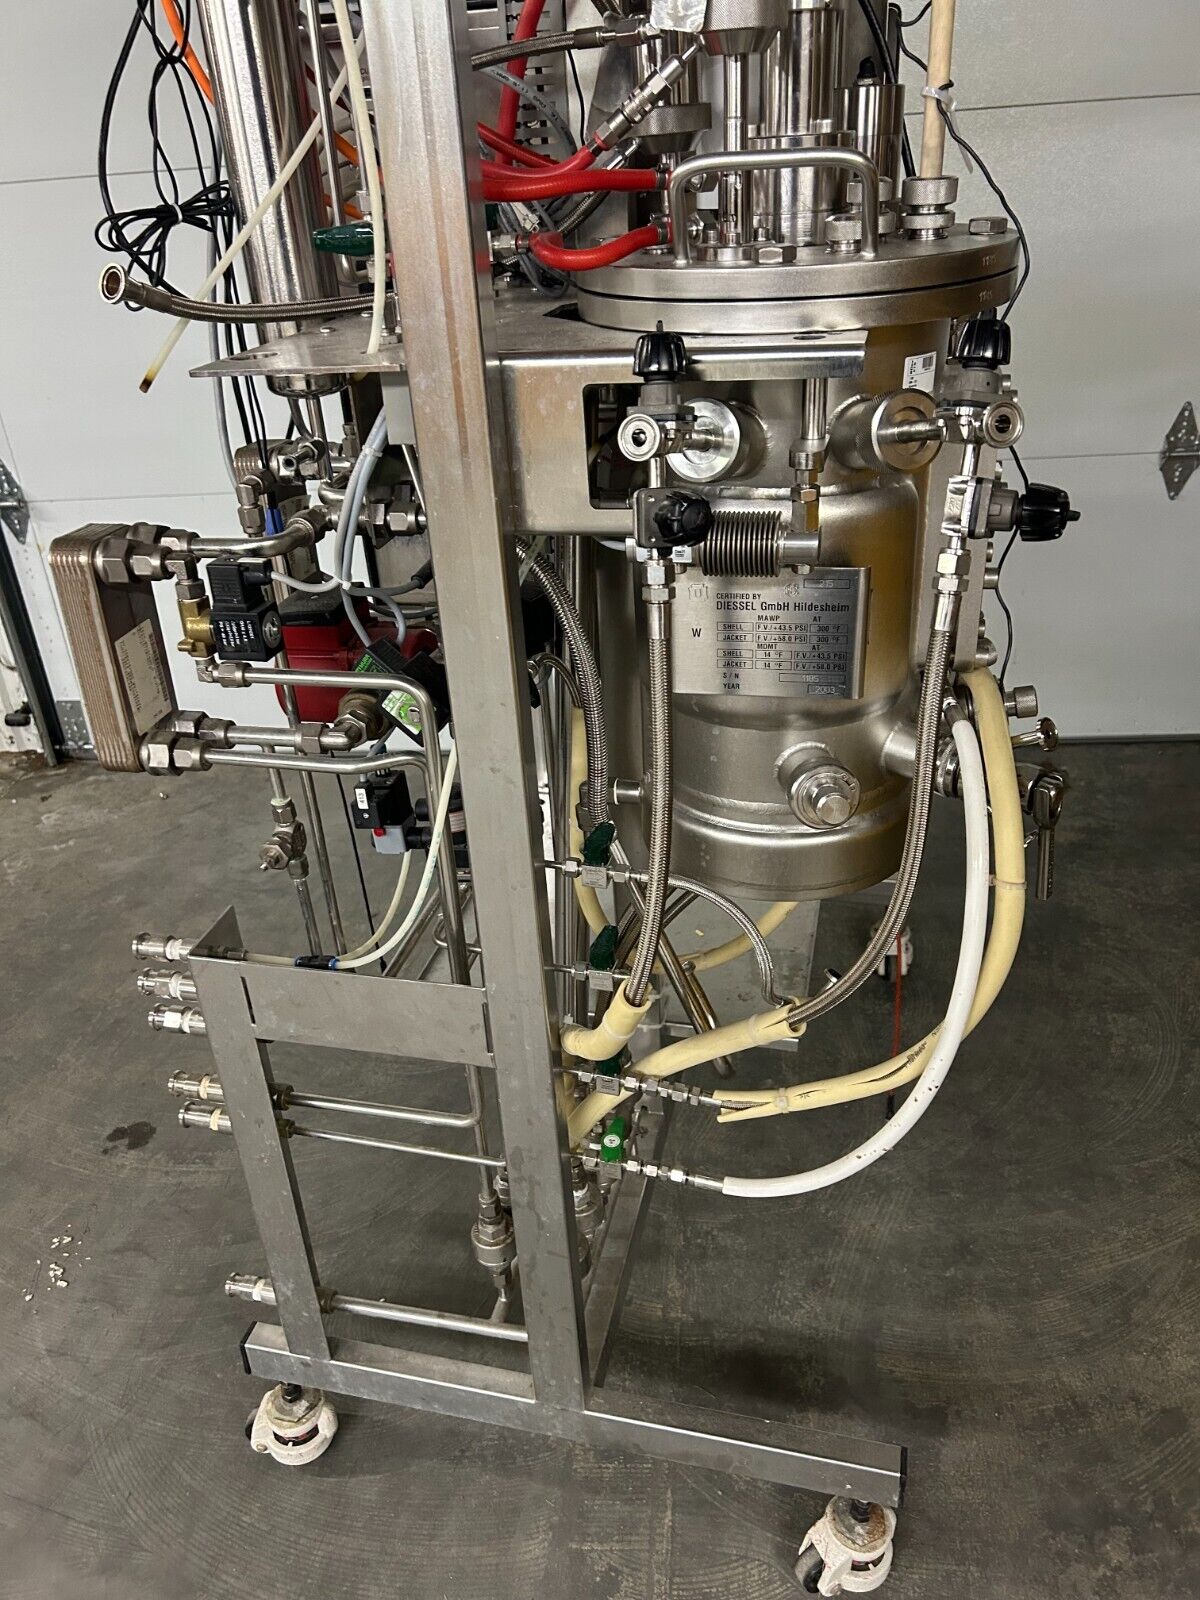 Biotech BioStat Fermenter C-DCU 3 10L Gasmix 4-MFC Bioreactor System Parts